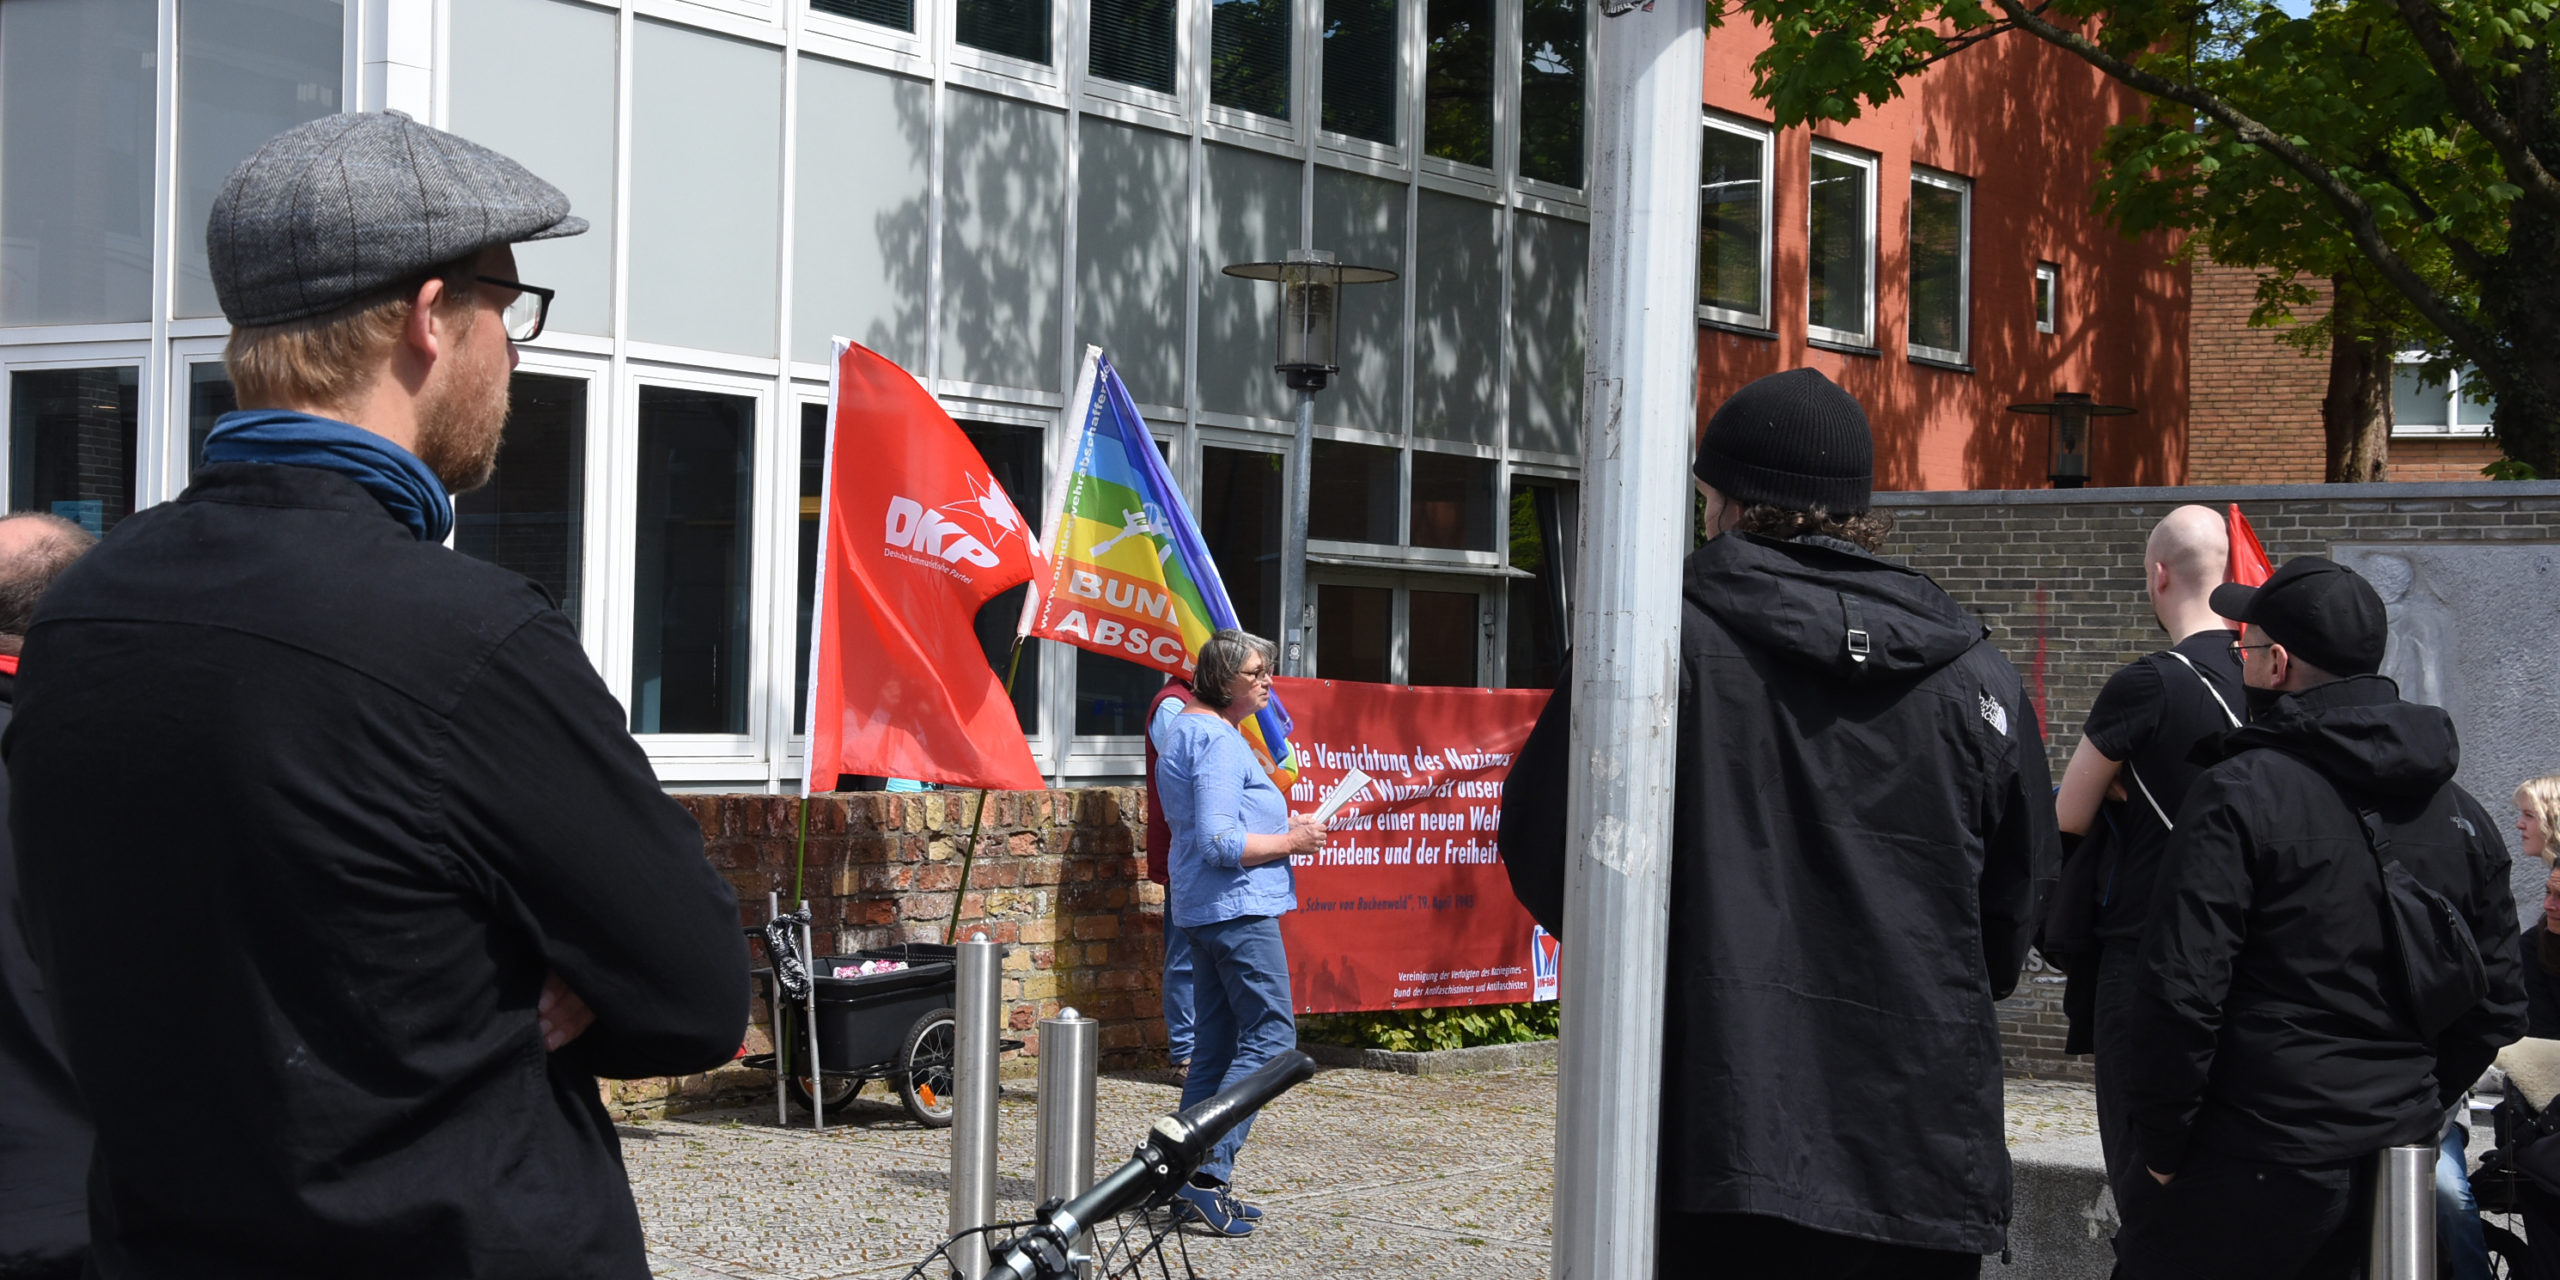 Flensburg 1 scaled - Friedensbotschaft - Antifaschismus, Tag der Befreiung - Im Bild